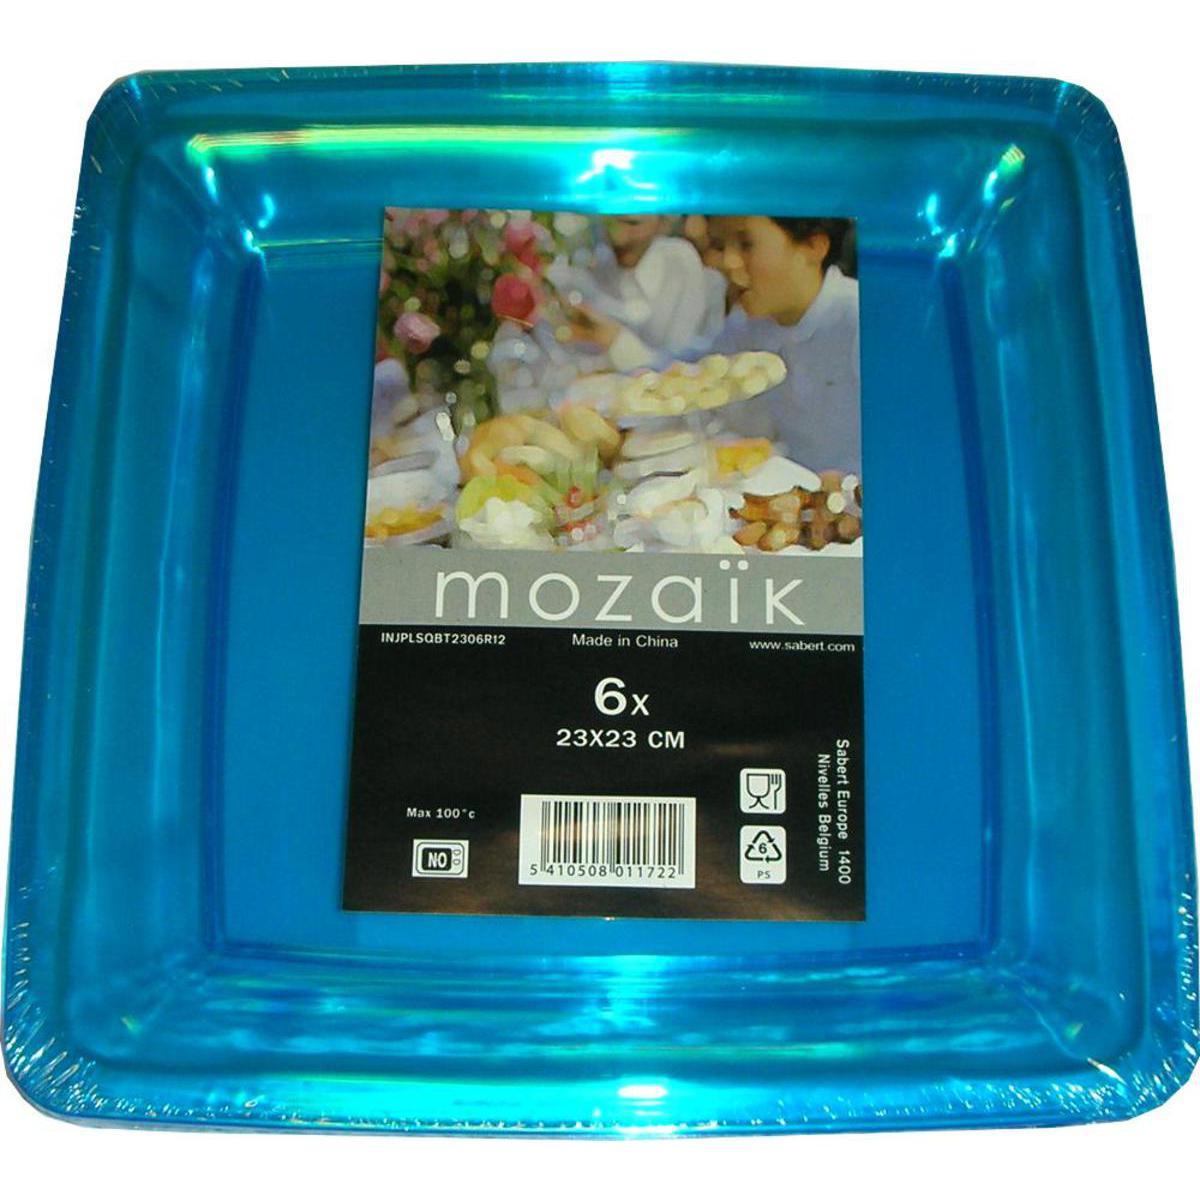 Lot de 6 assiettes en plastique réutilisable - 23 x 23 cm -Polystyrène- Bleu turquoise